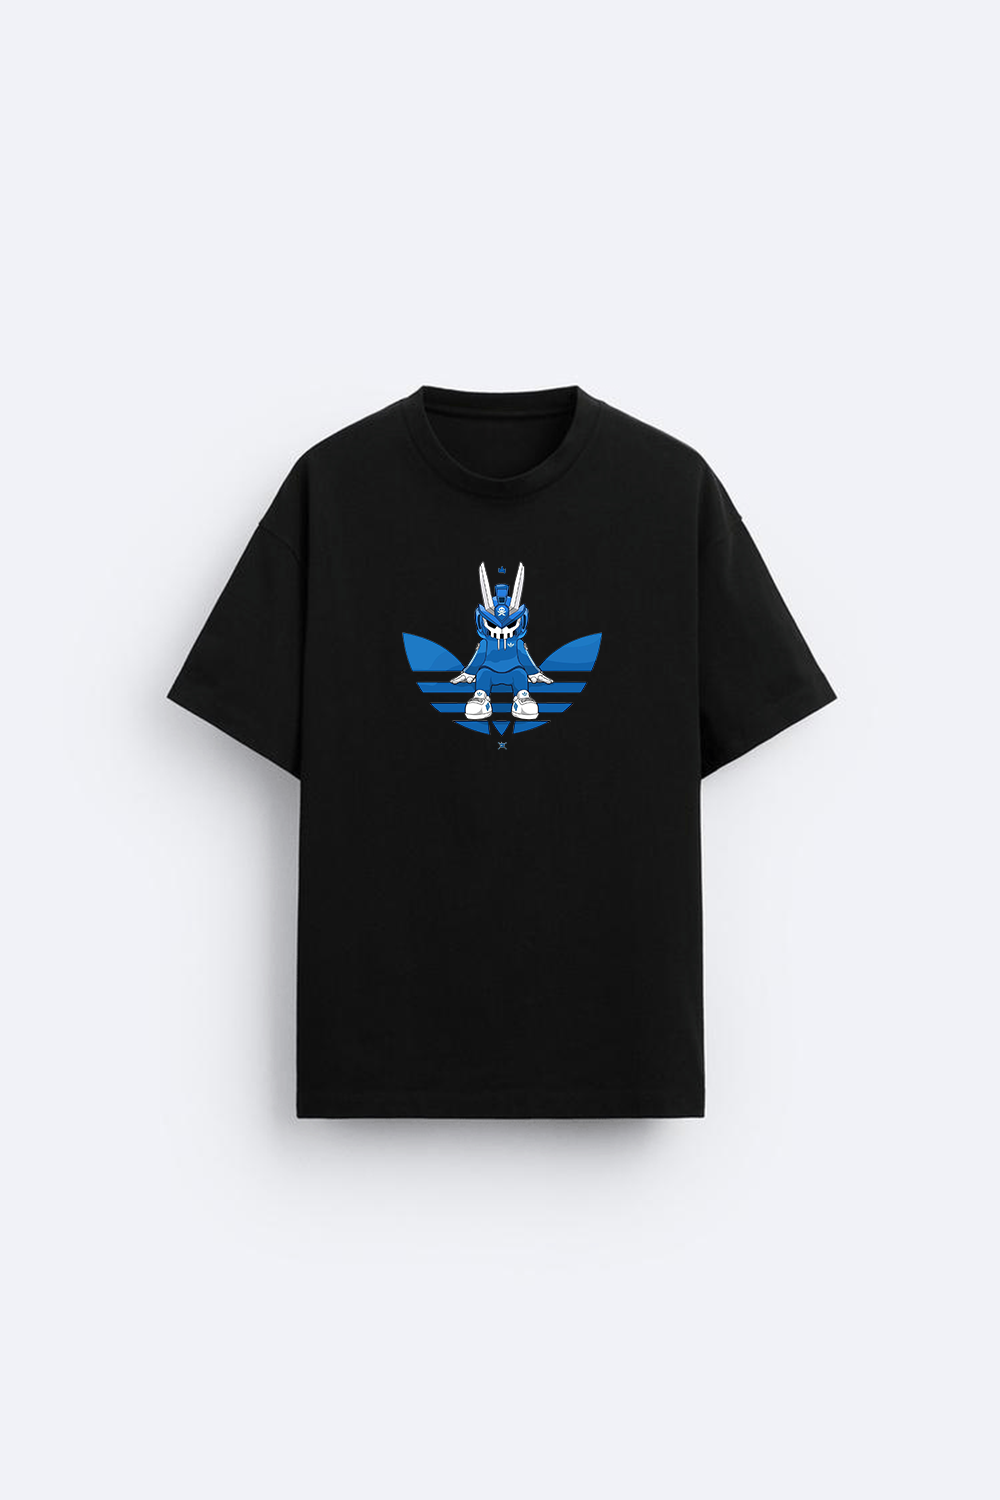 Adidas printed t-shirt